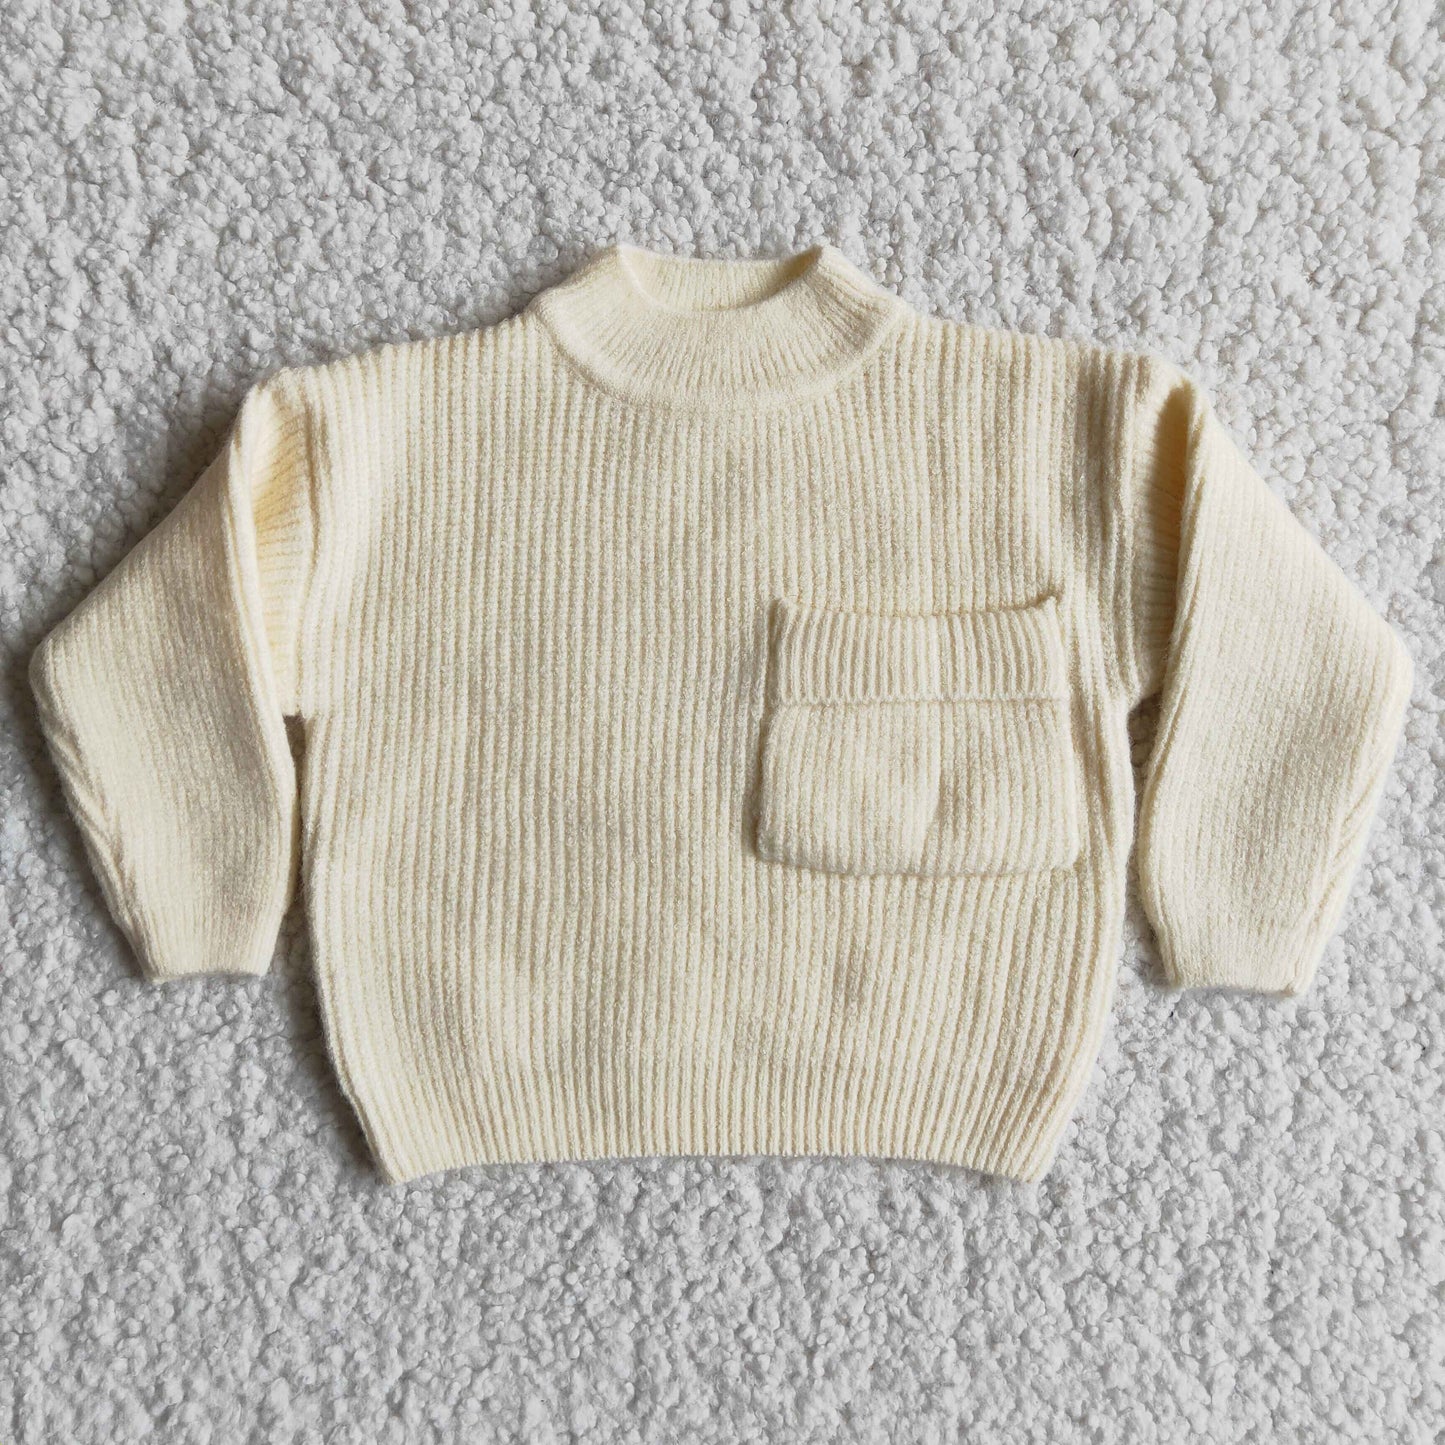 Beige color pocket sweater